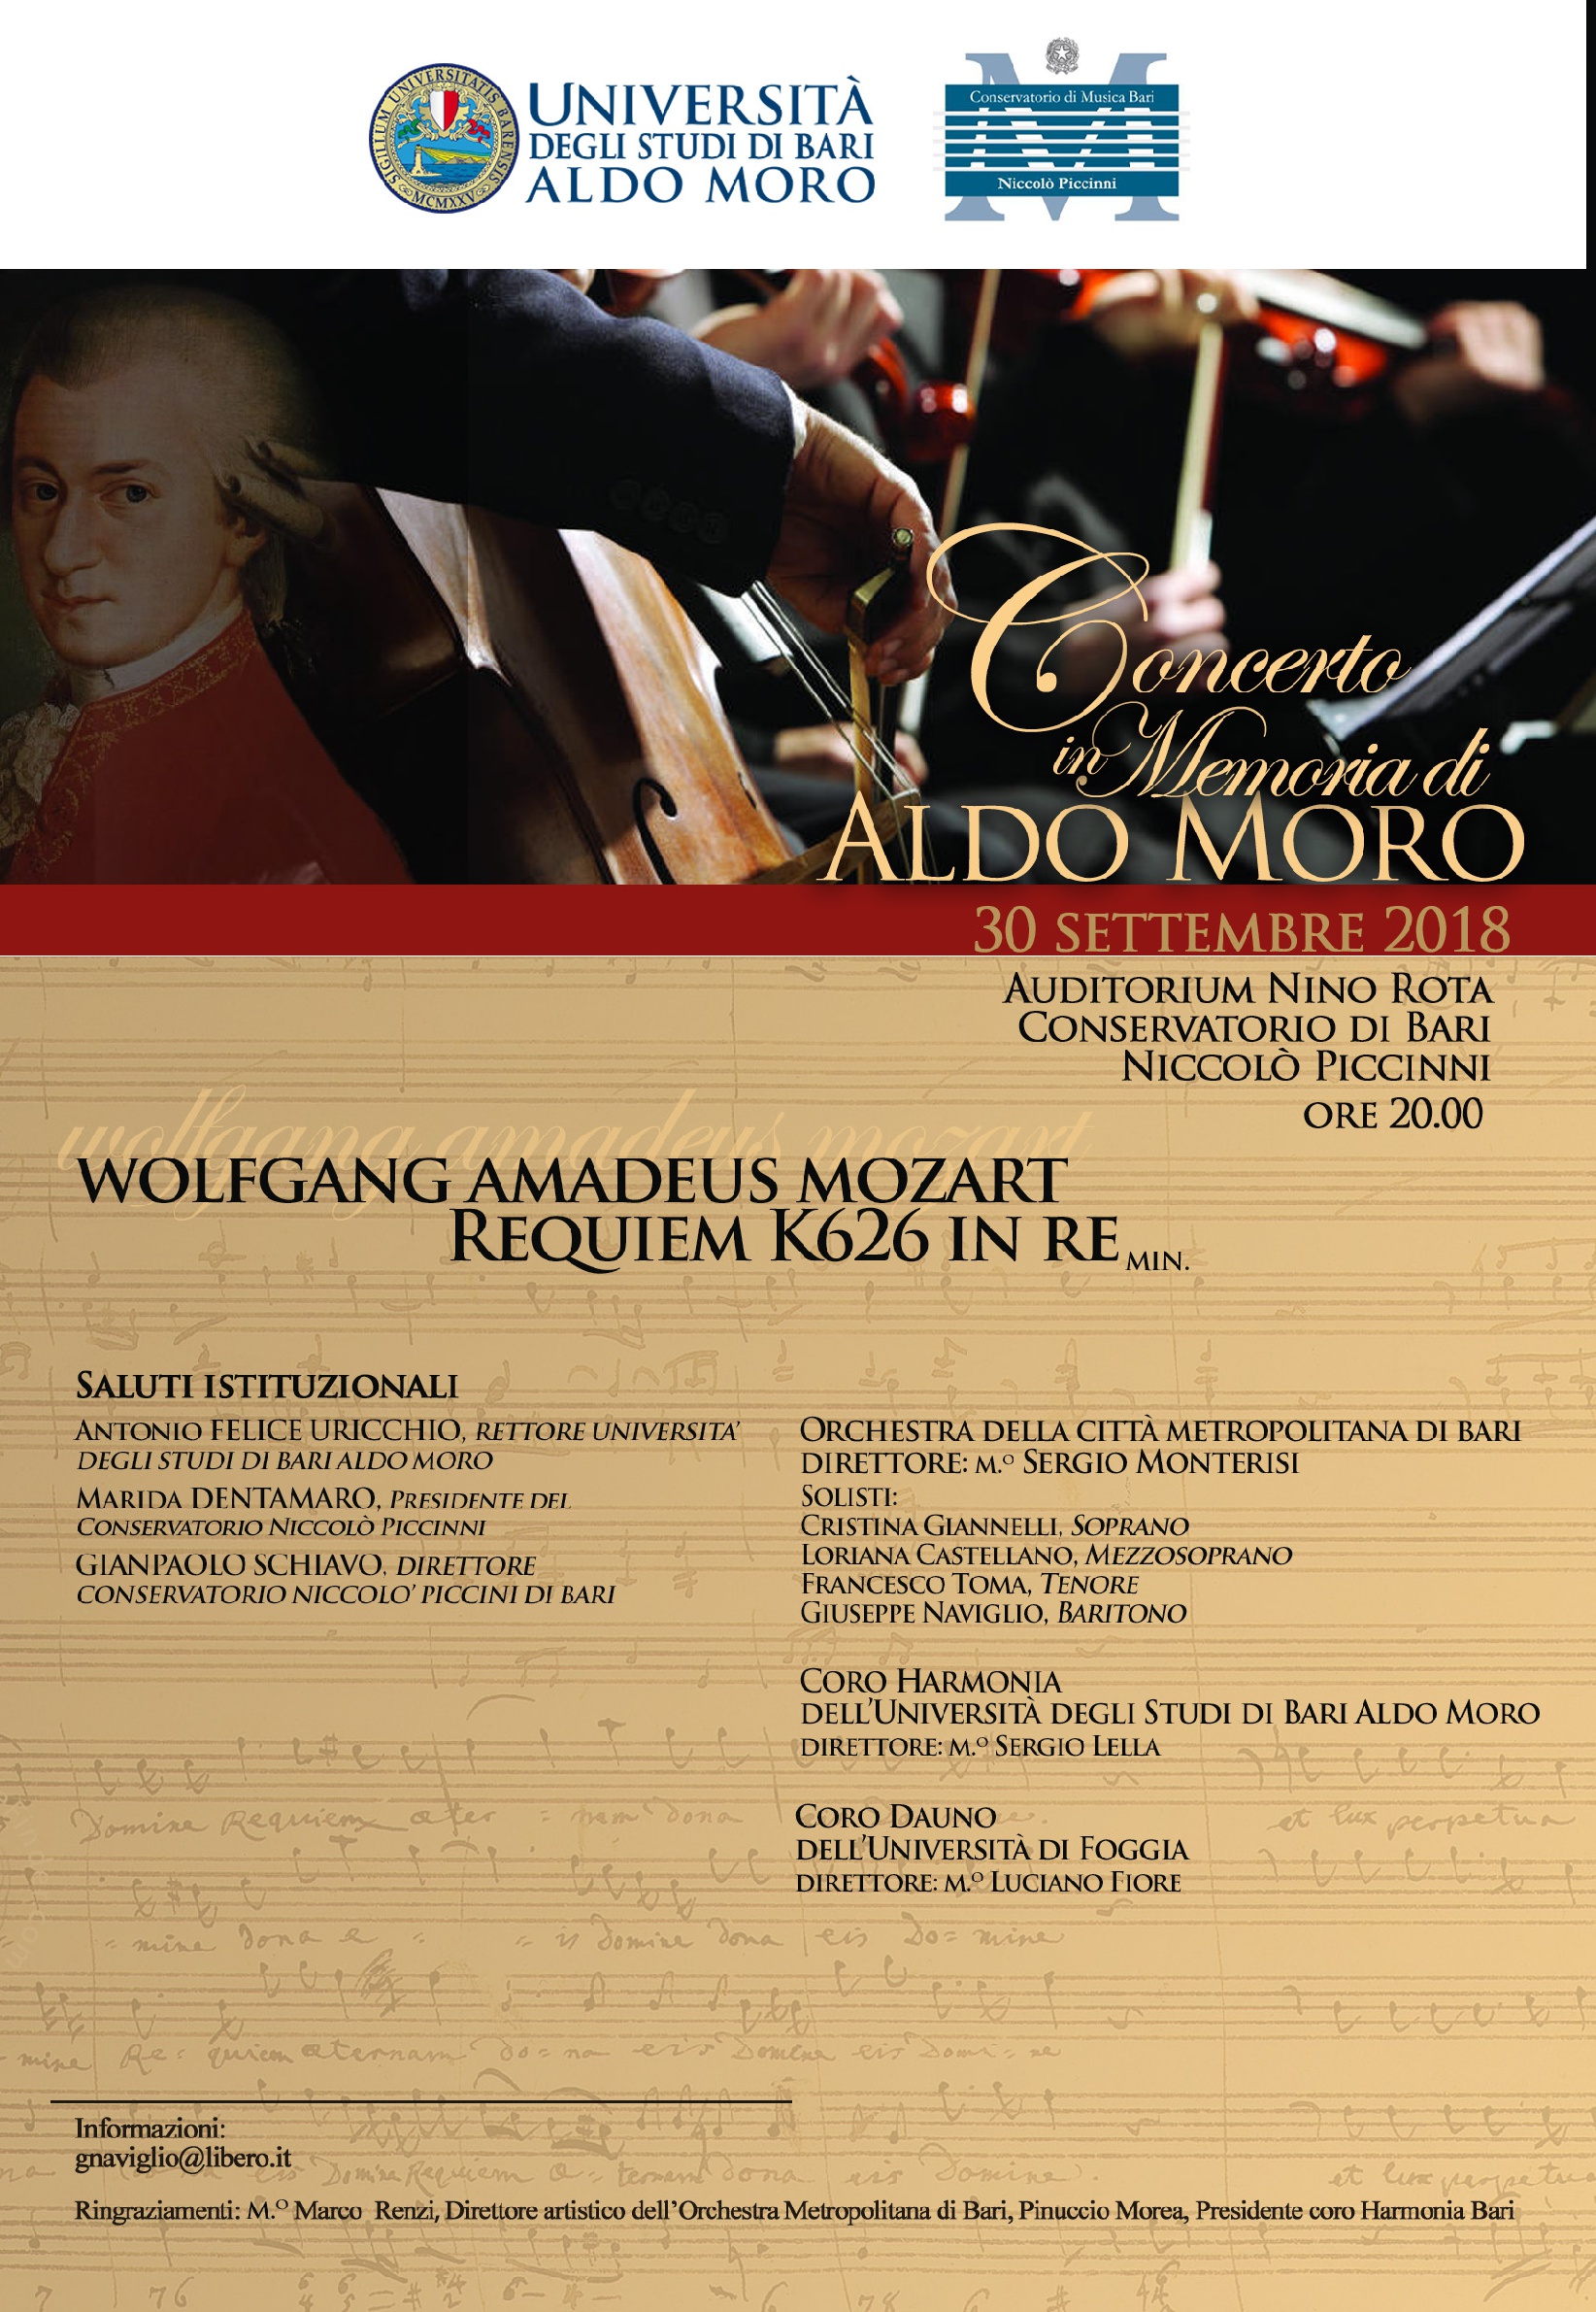 Concerto in memoria di Aldo Moro @ Auditorium Nino Rota - Conservatorio di Bari Niccolò Piccinni | Bari | Puglia | Italia